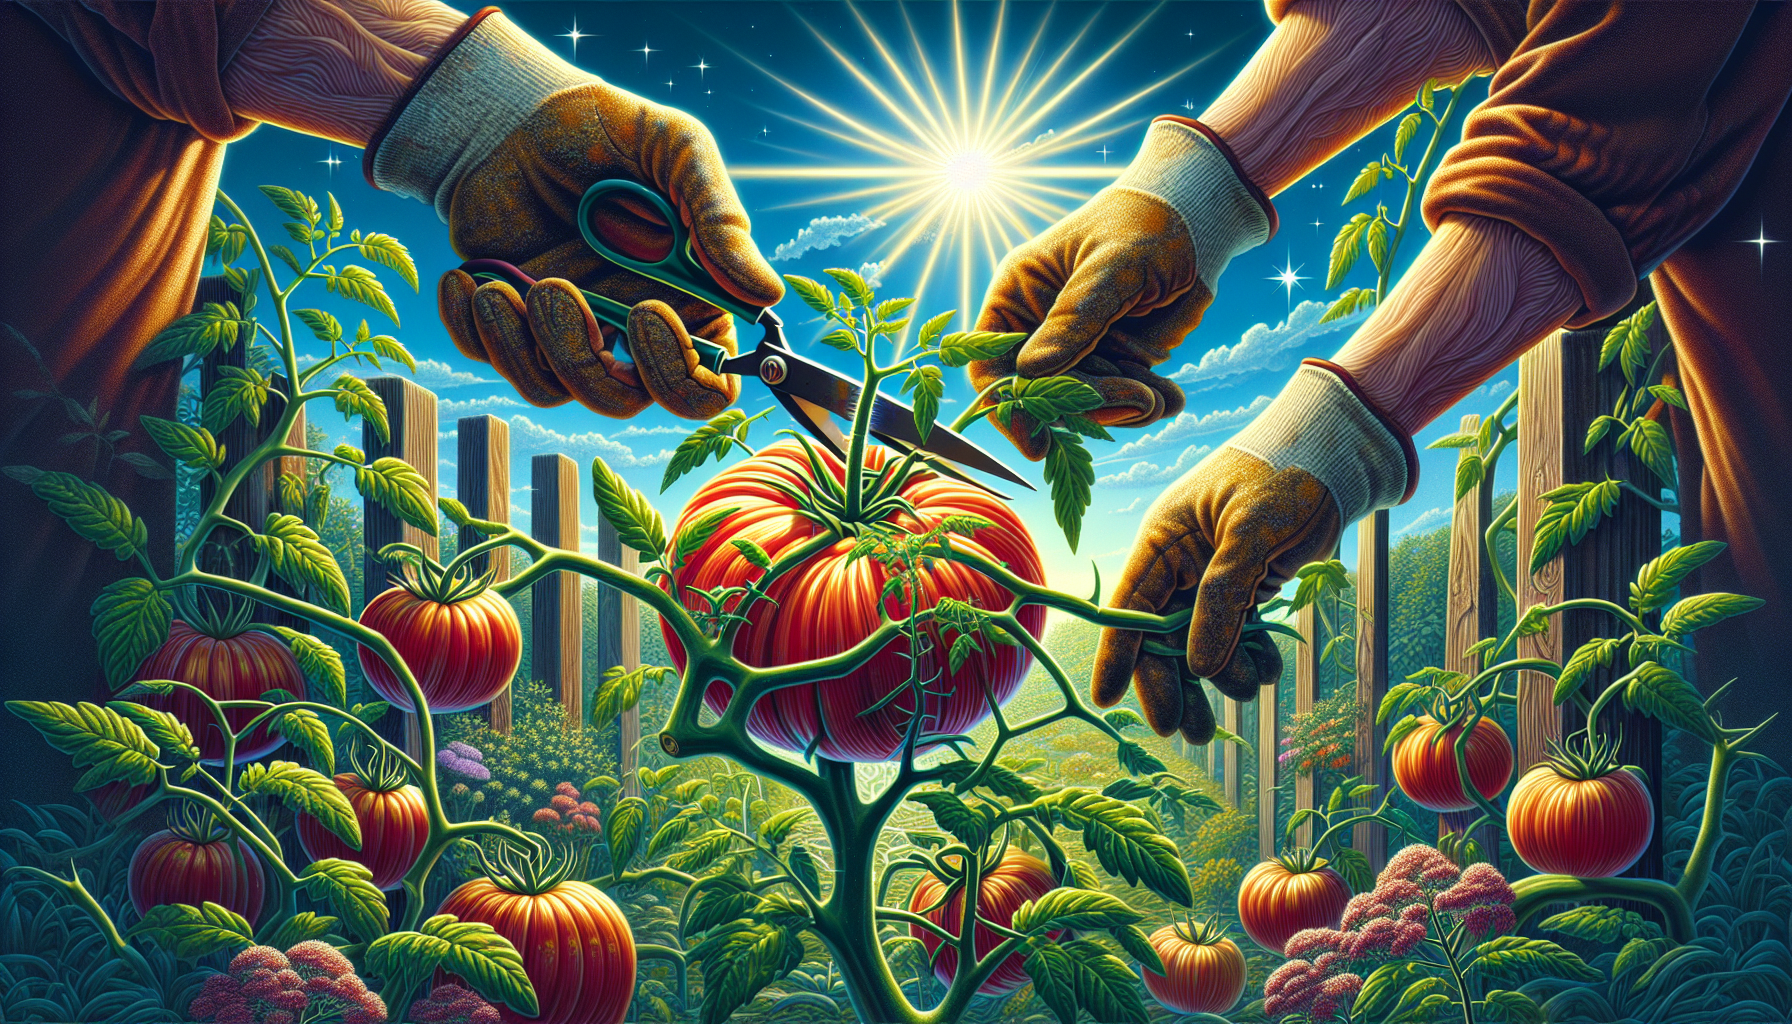 découvrez l'importance de la coupe des gourmands des tomates pour une récolte abondante dans votre jardin. conseils de jardinage pour optimiser la croissance et la productivité de vos plants de tomates.